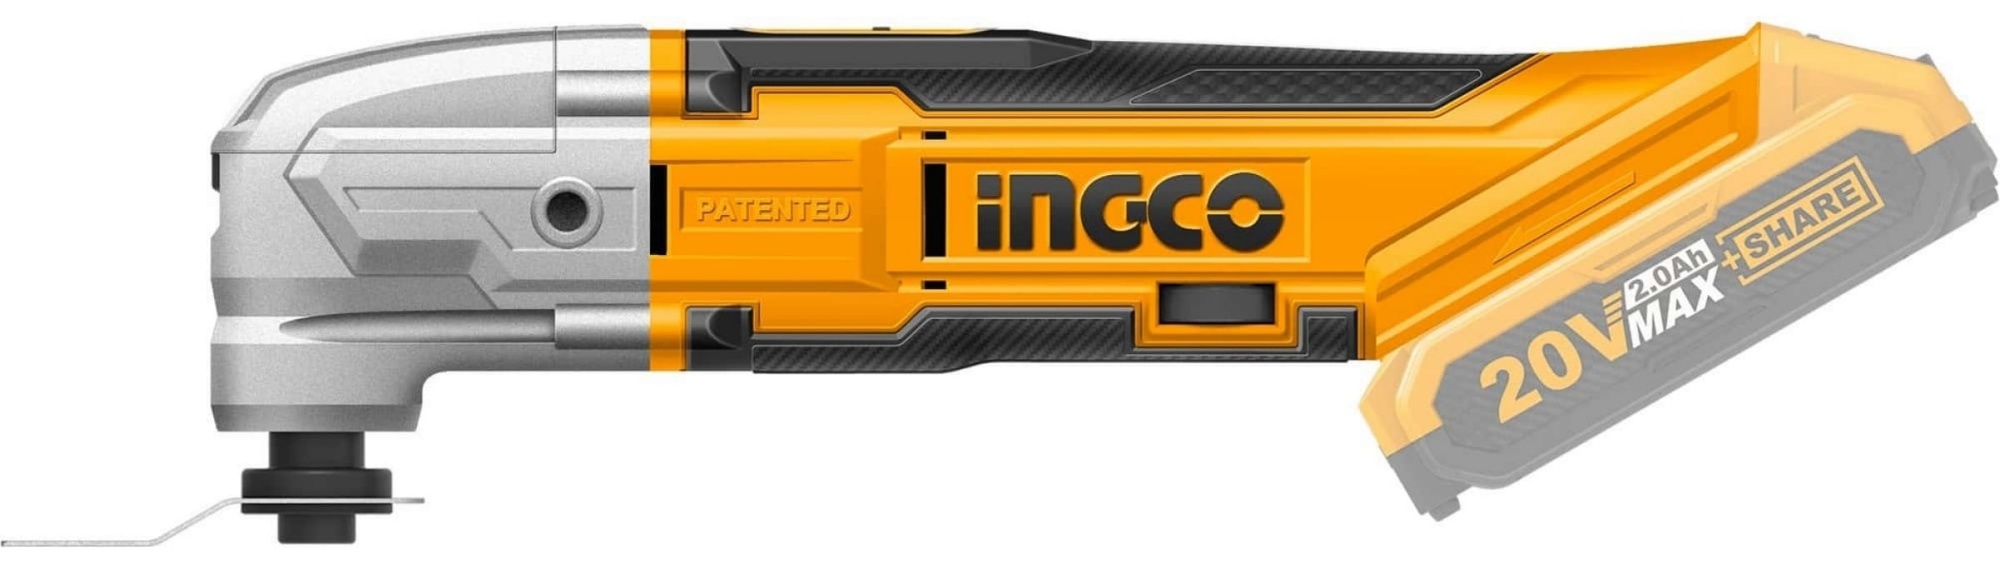 Многофункциональный инструмент Ingco CMLI2001,  по выгодной цене .